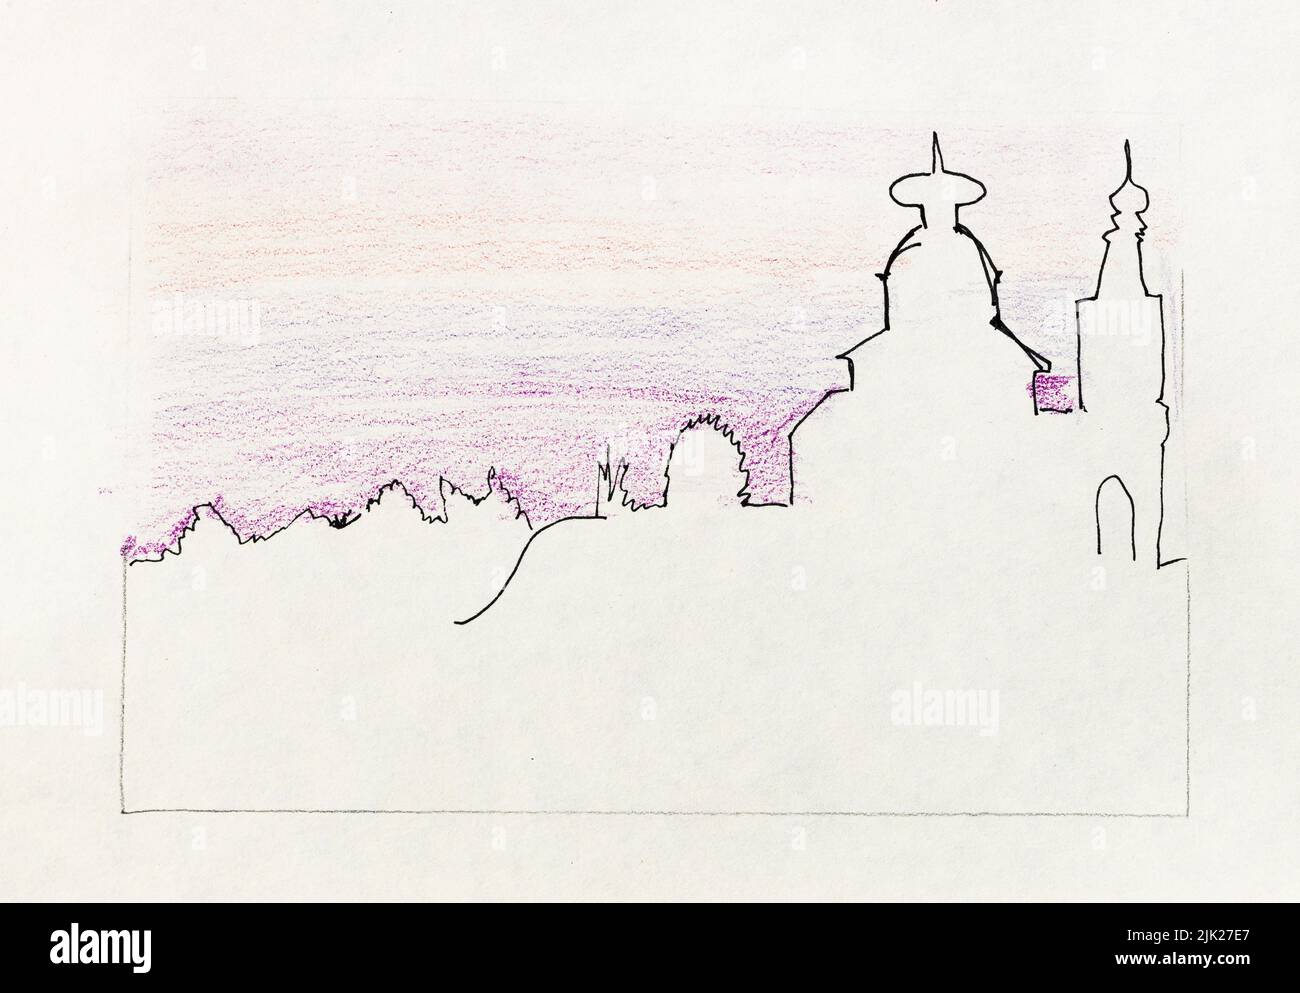 Bosquejo del horizonte de la ciudad de Suzdal Rusia bajo el cielo púrpura de la puesta de sol dibujado a mano con pluma negra y lápices de color sobre papel blanco viejo texturizado Foto de stock